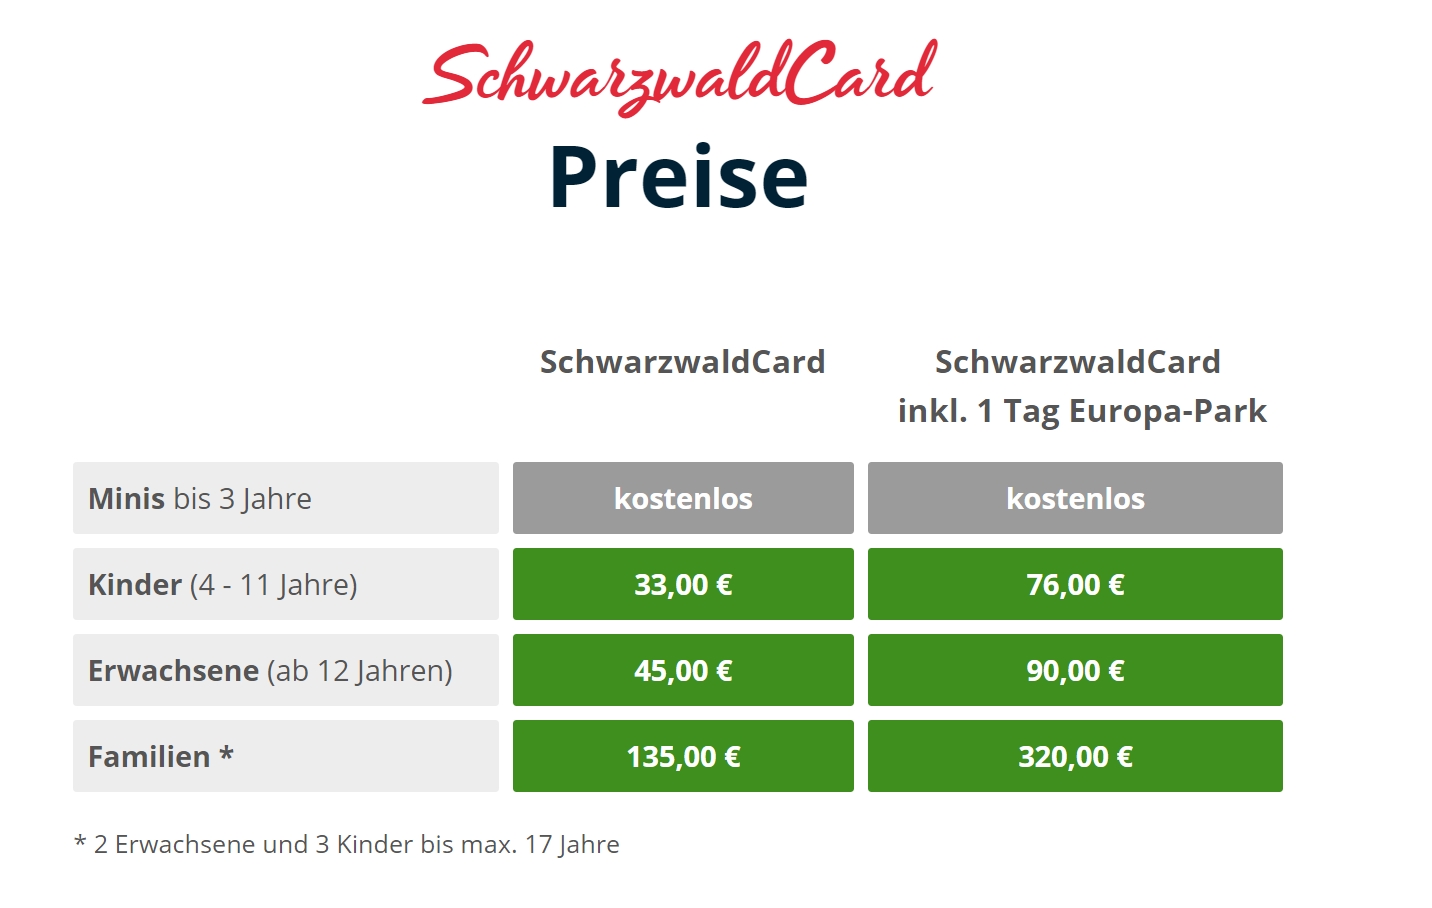 Hochschwarzwaldcard Schwarzwaldcard Preise